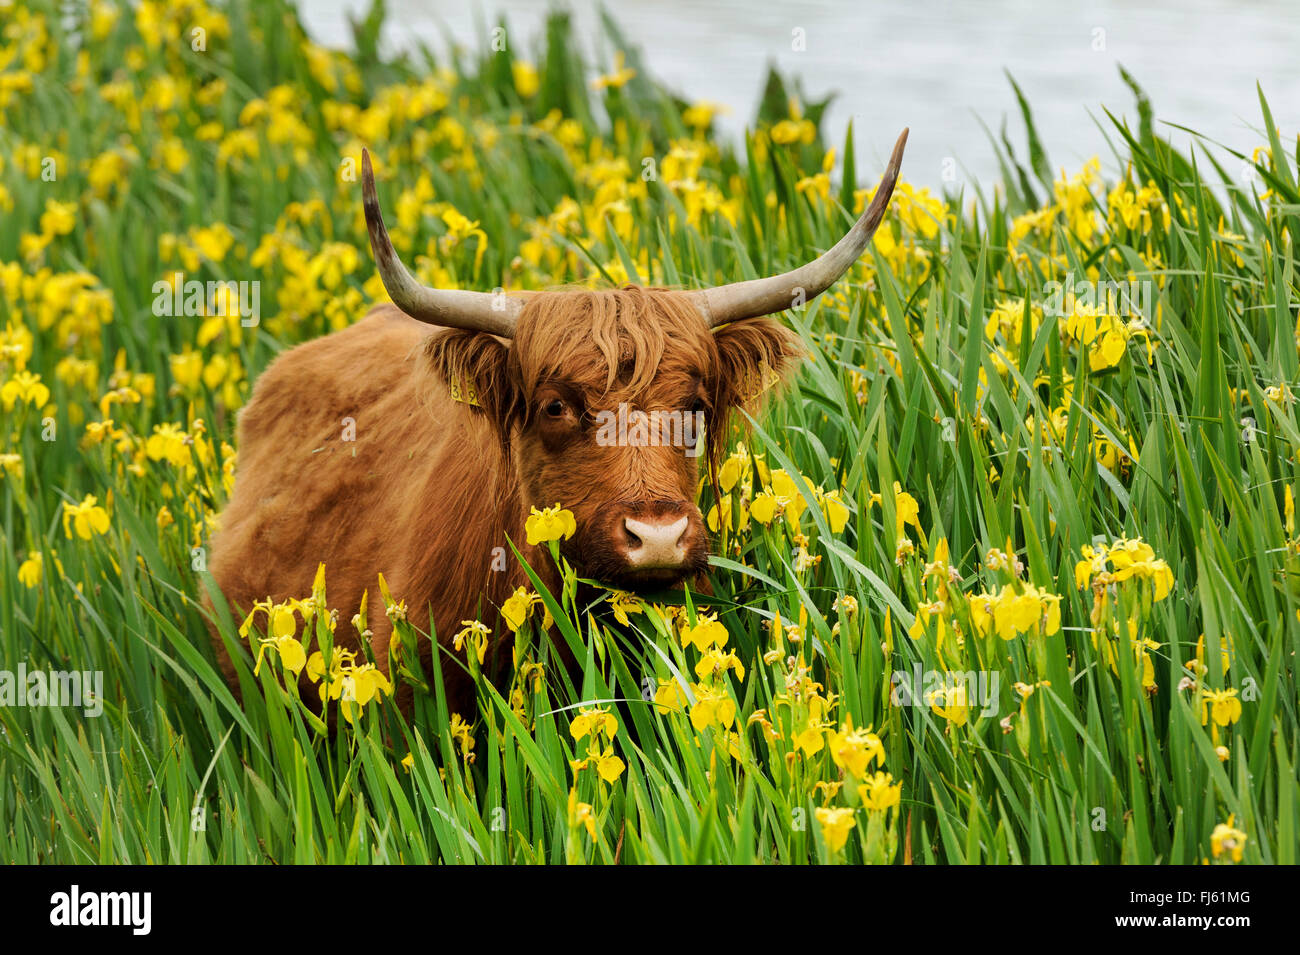 Scottish Highland cattle, Kyloe (Bos primigenius f. taurus), dans une population d'iris jaune (Iris pseudacorus), Allemagne Banque D'Images